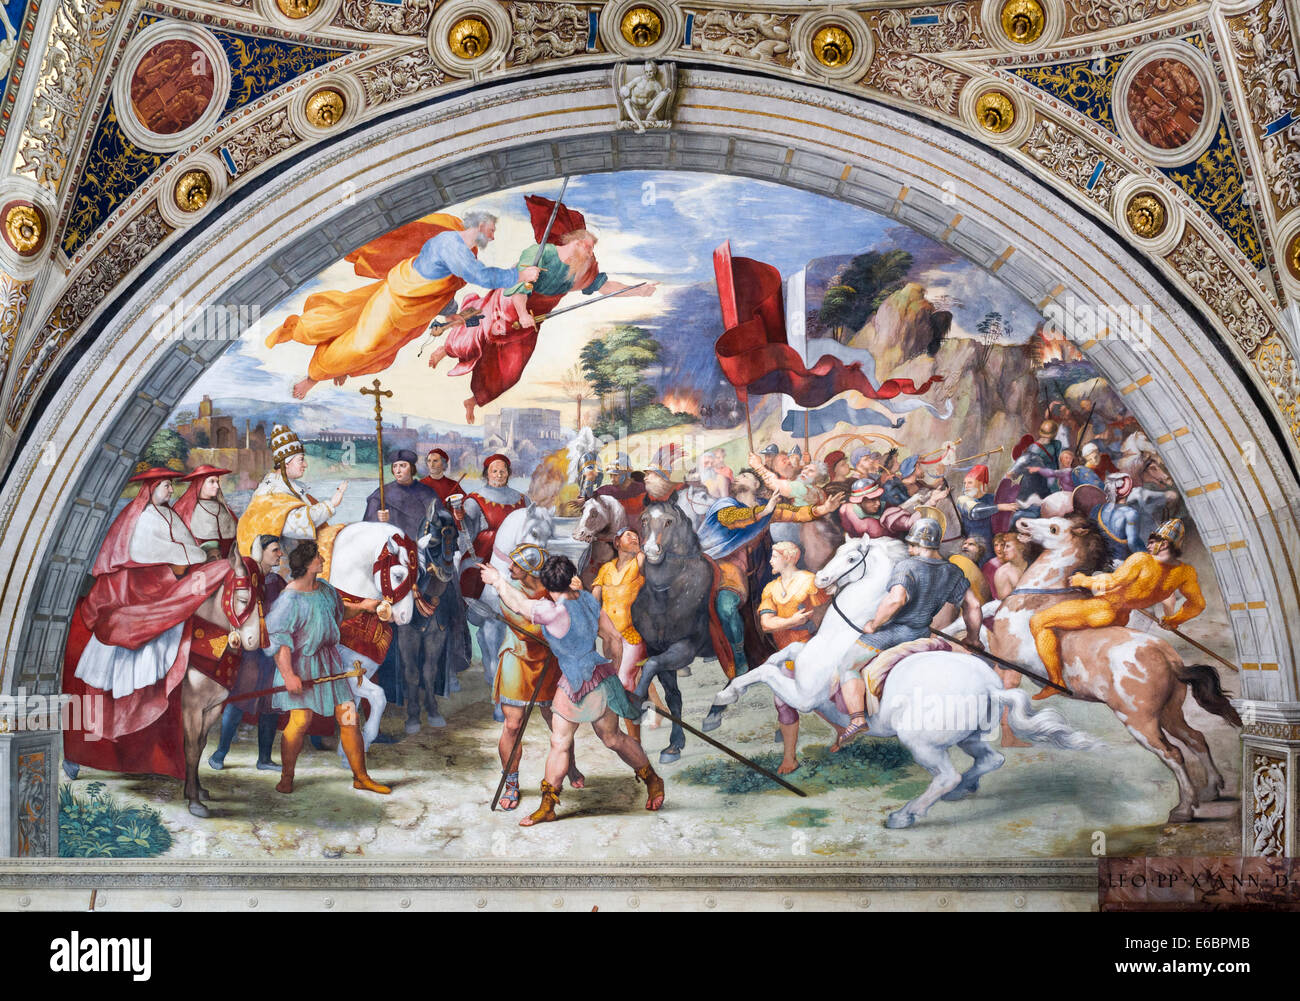 The Meeting of Leo the Great and Attila, Stanza di Eliodorus, Raphael's Rooms or Stanze di Raffaello, fresco by Raphael Stock Photo